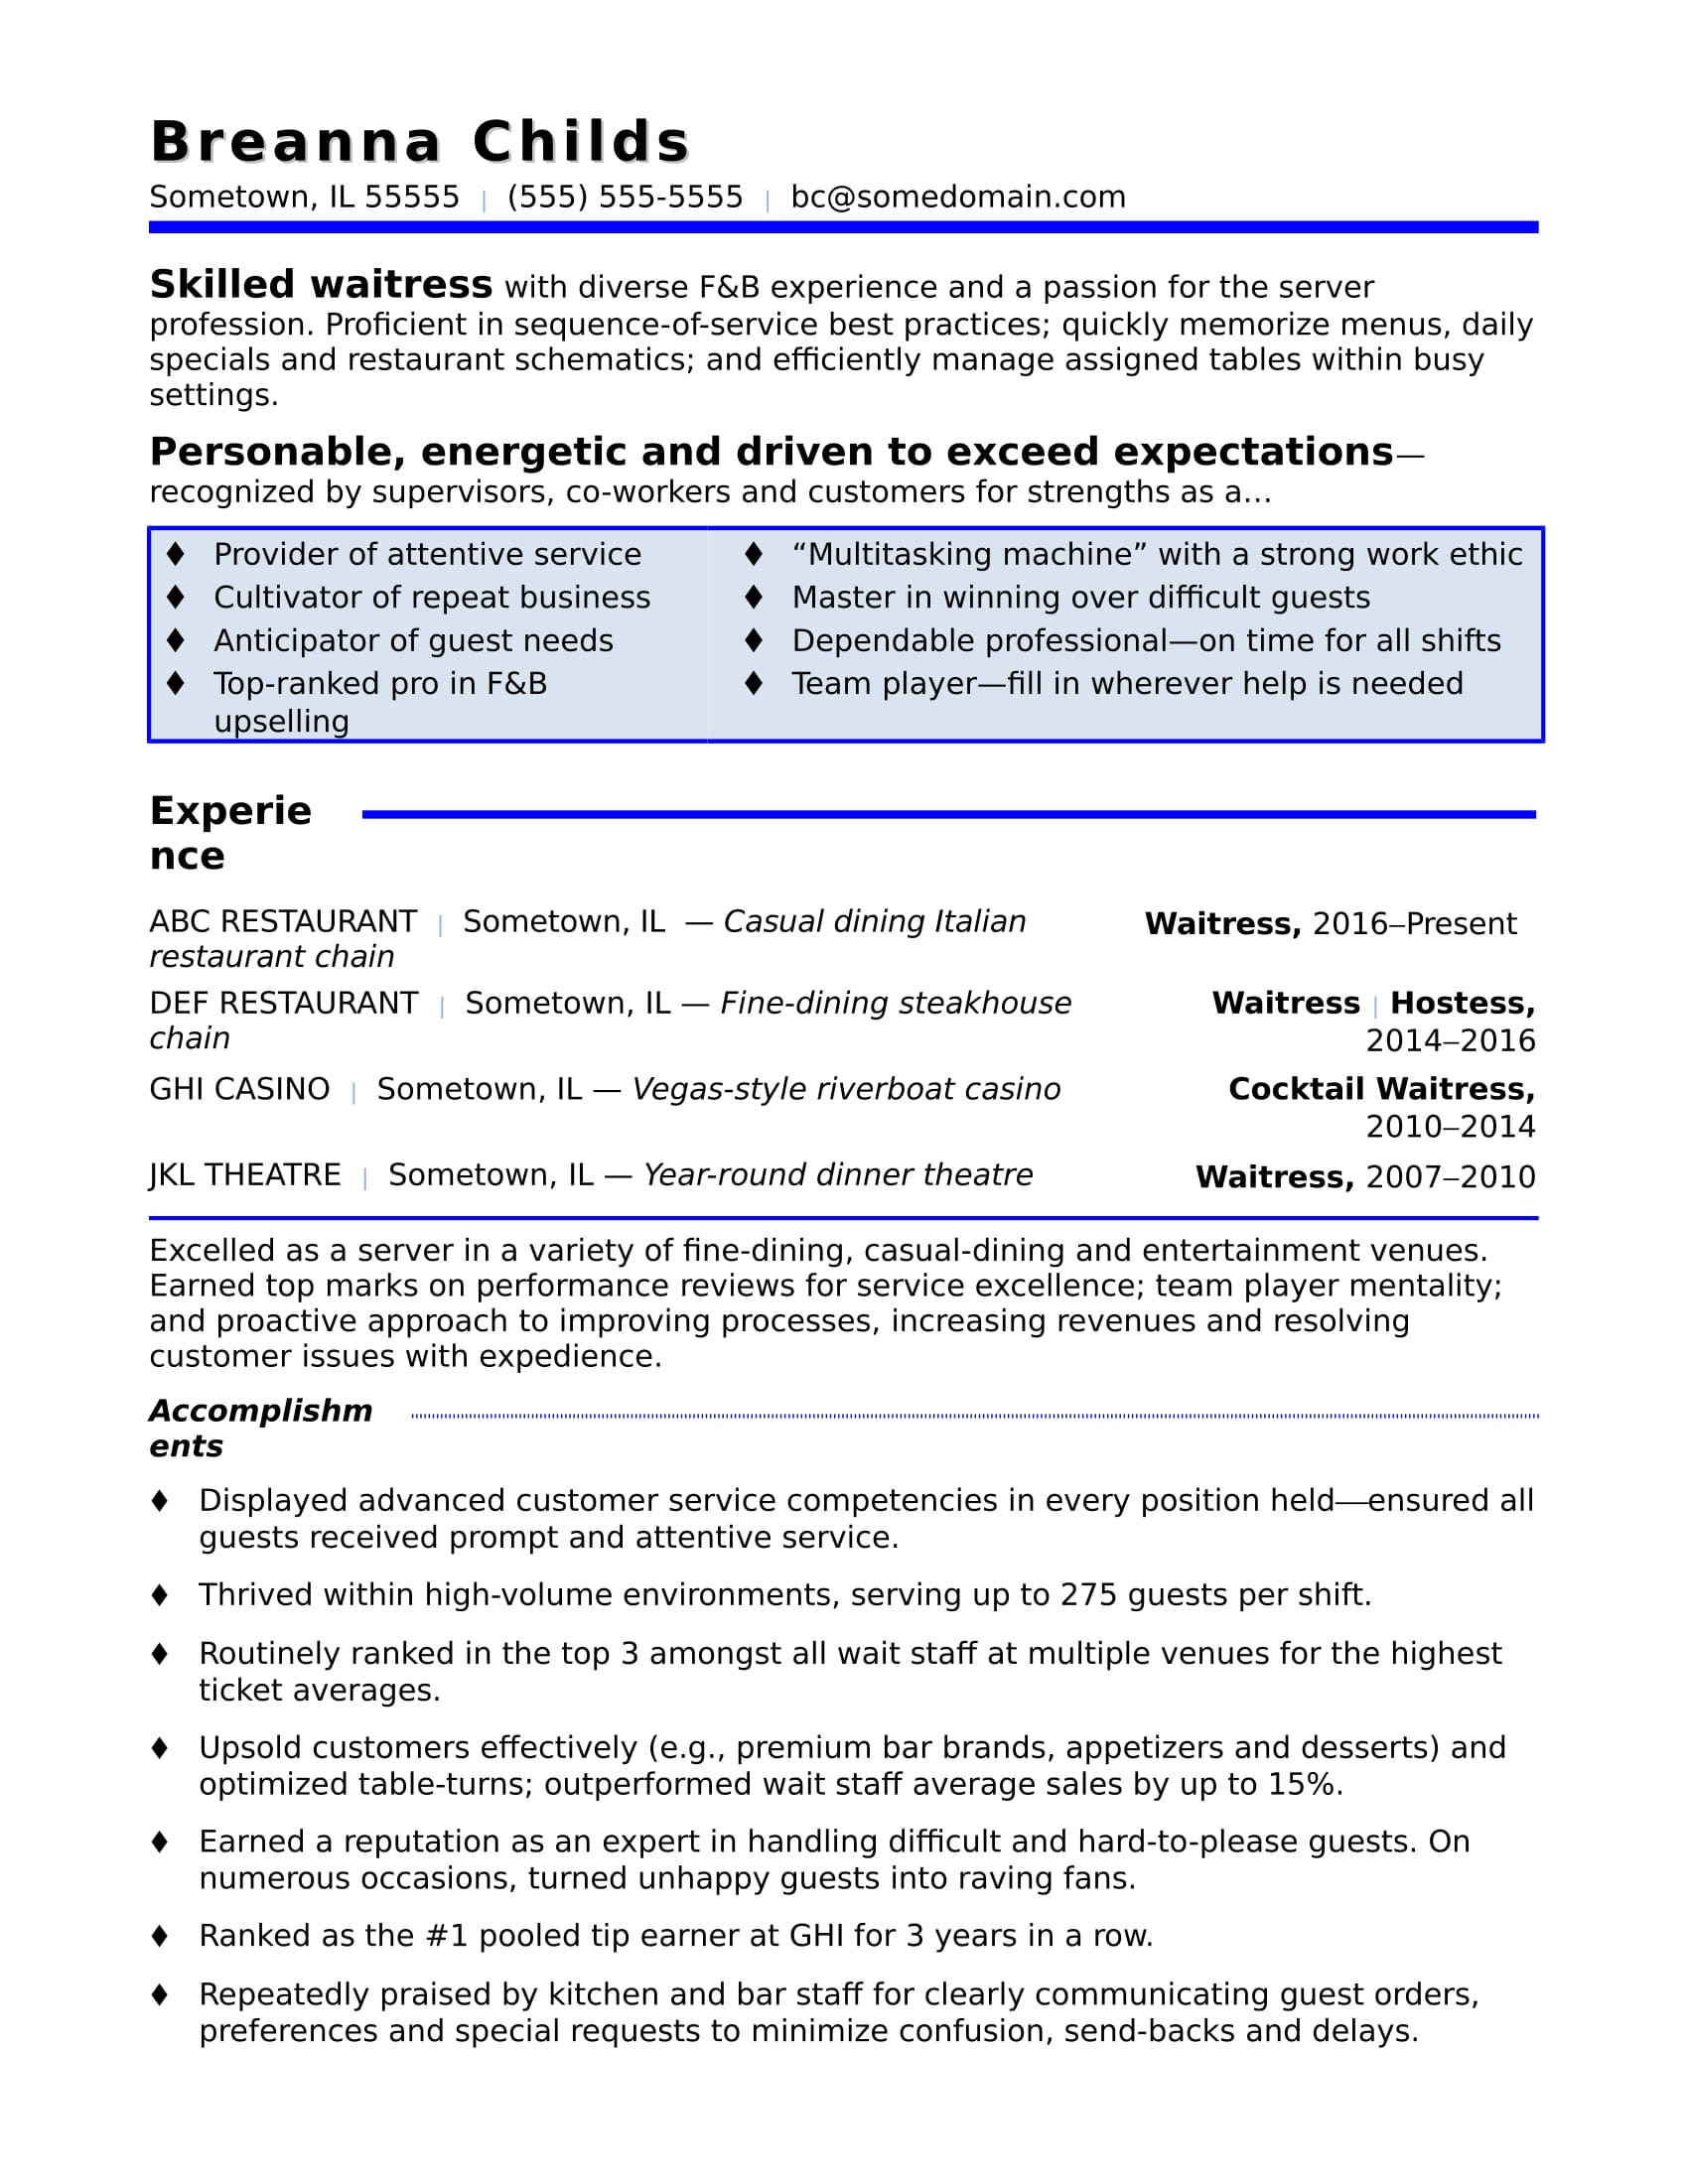 Waitress Job Description for Resume Samples Waitress Resume Sample Monster.com